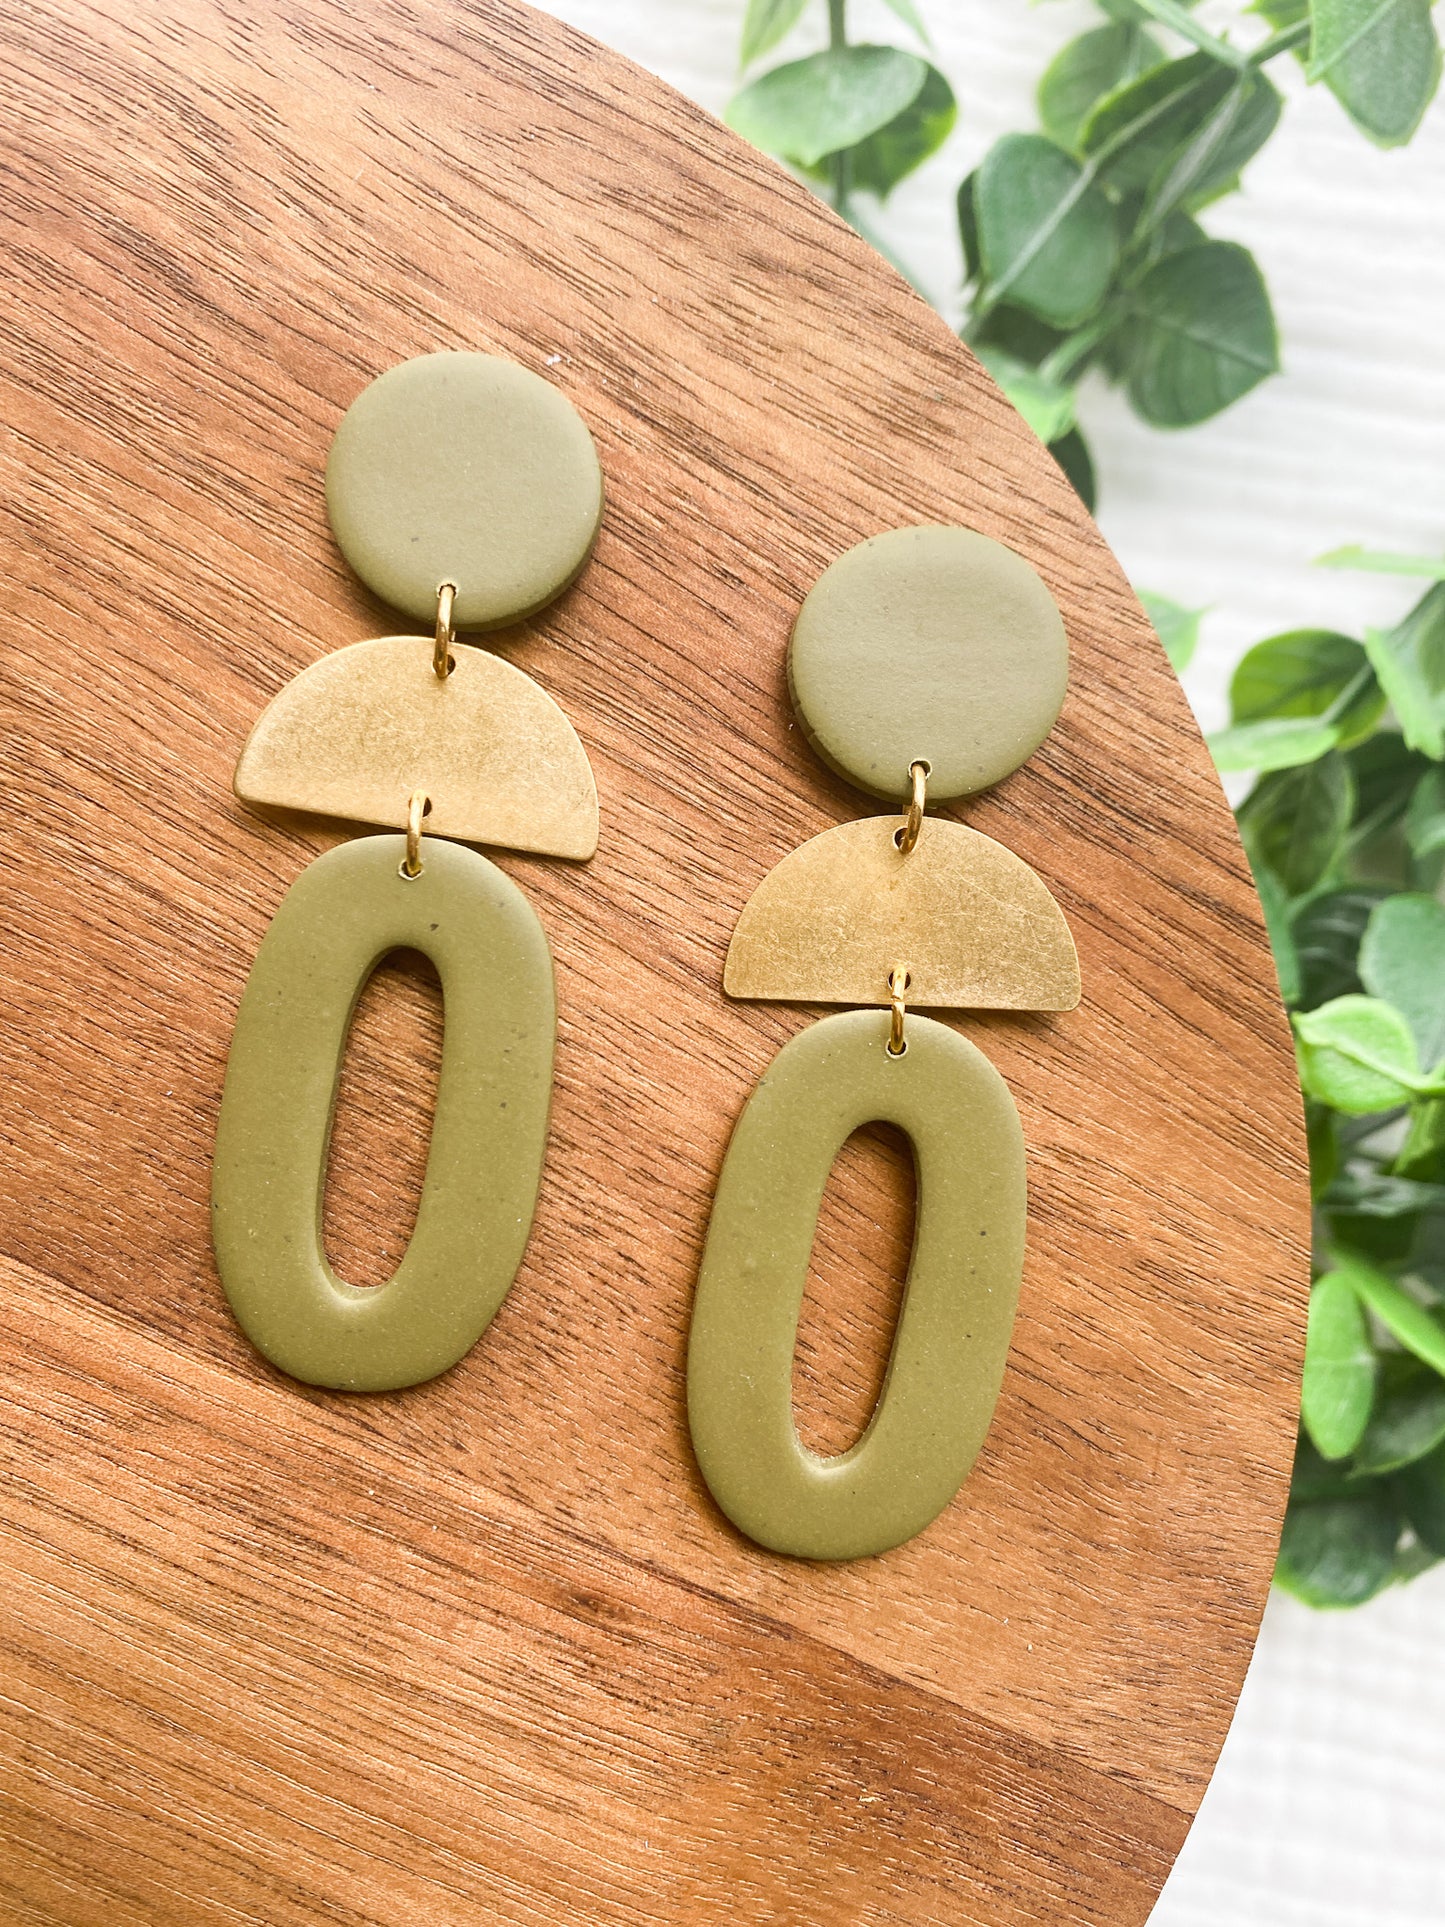 Brass and Boho Statement Earrings | Autumn Earrings | Olive Green Earrings | Lightweight